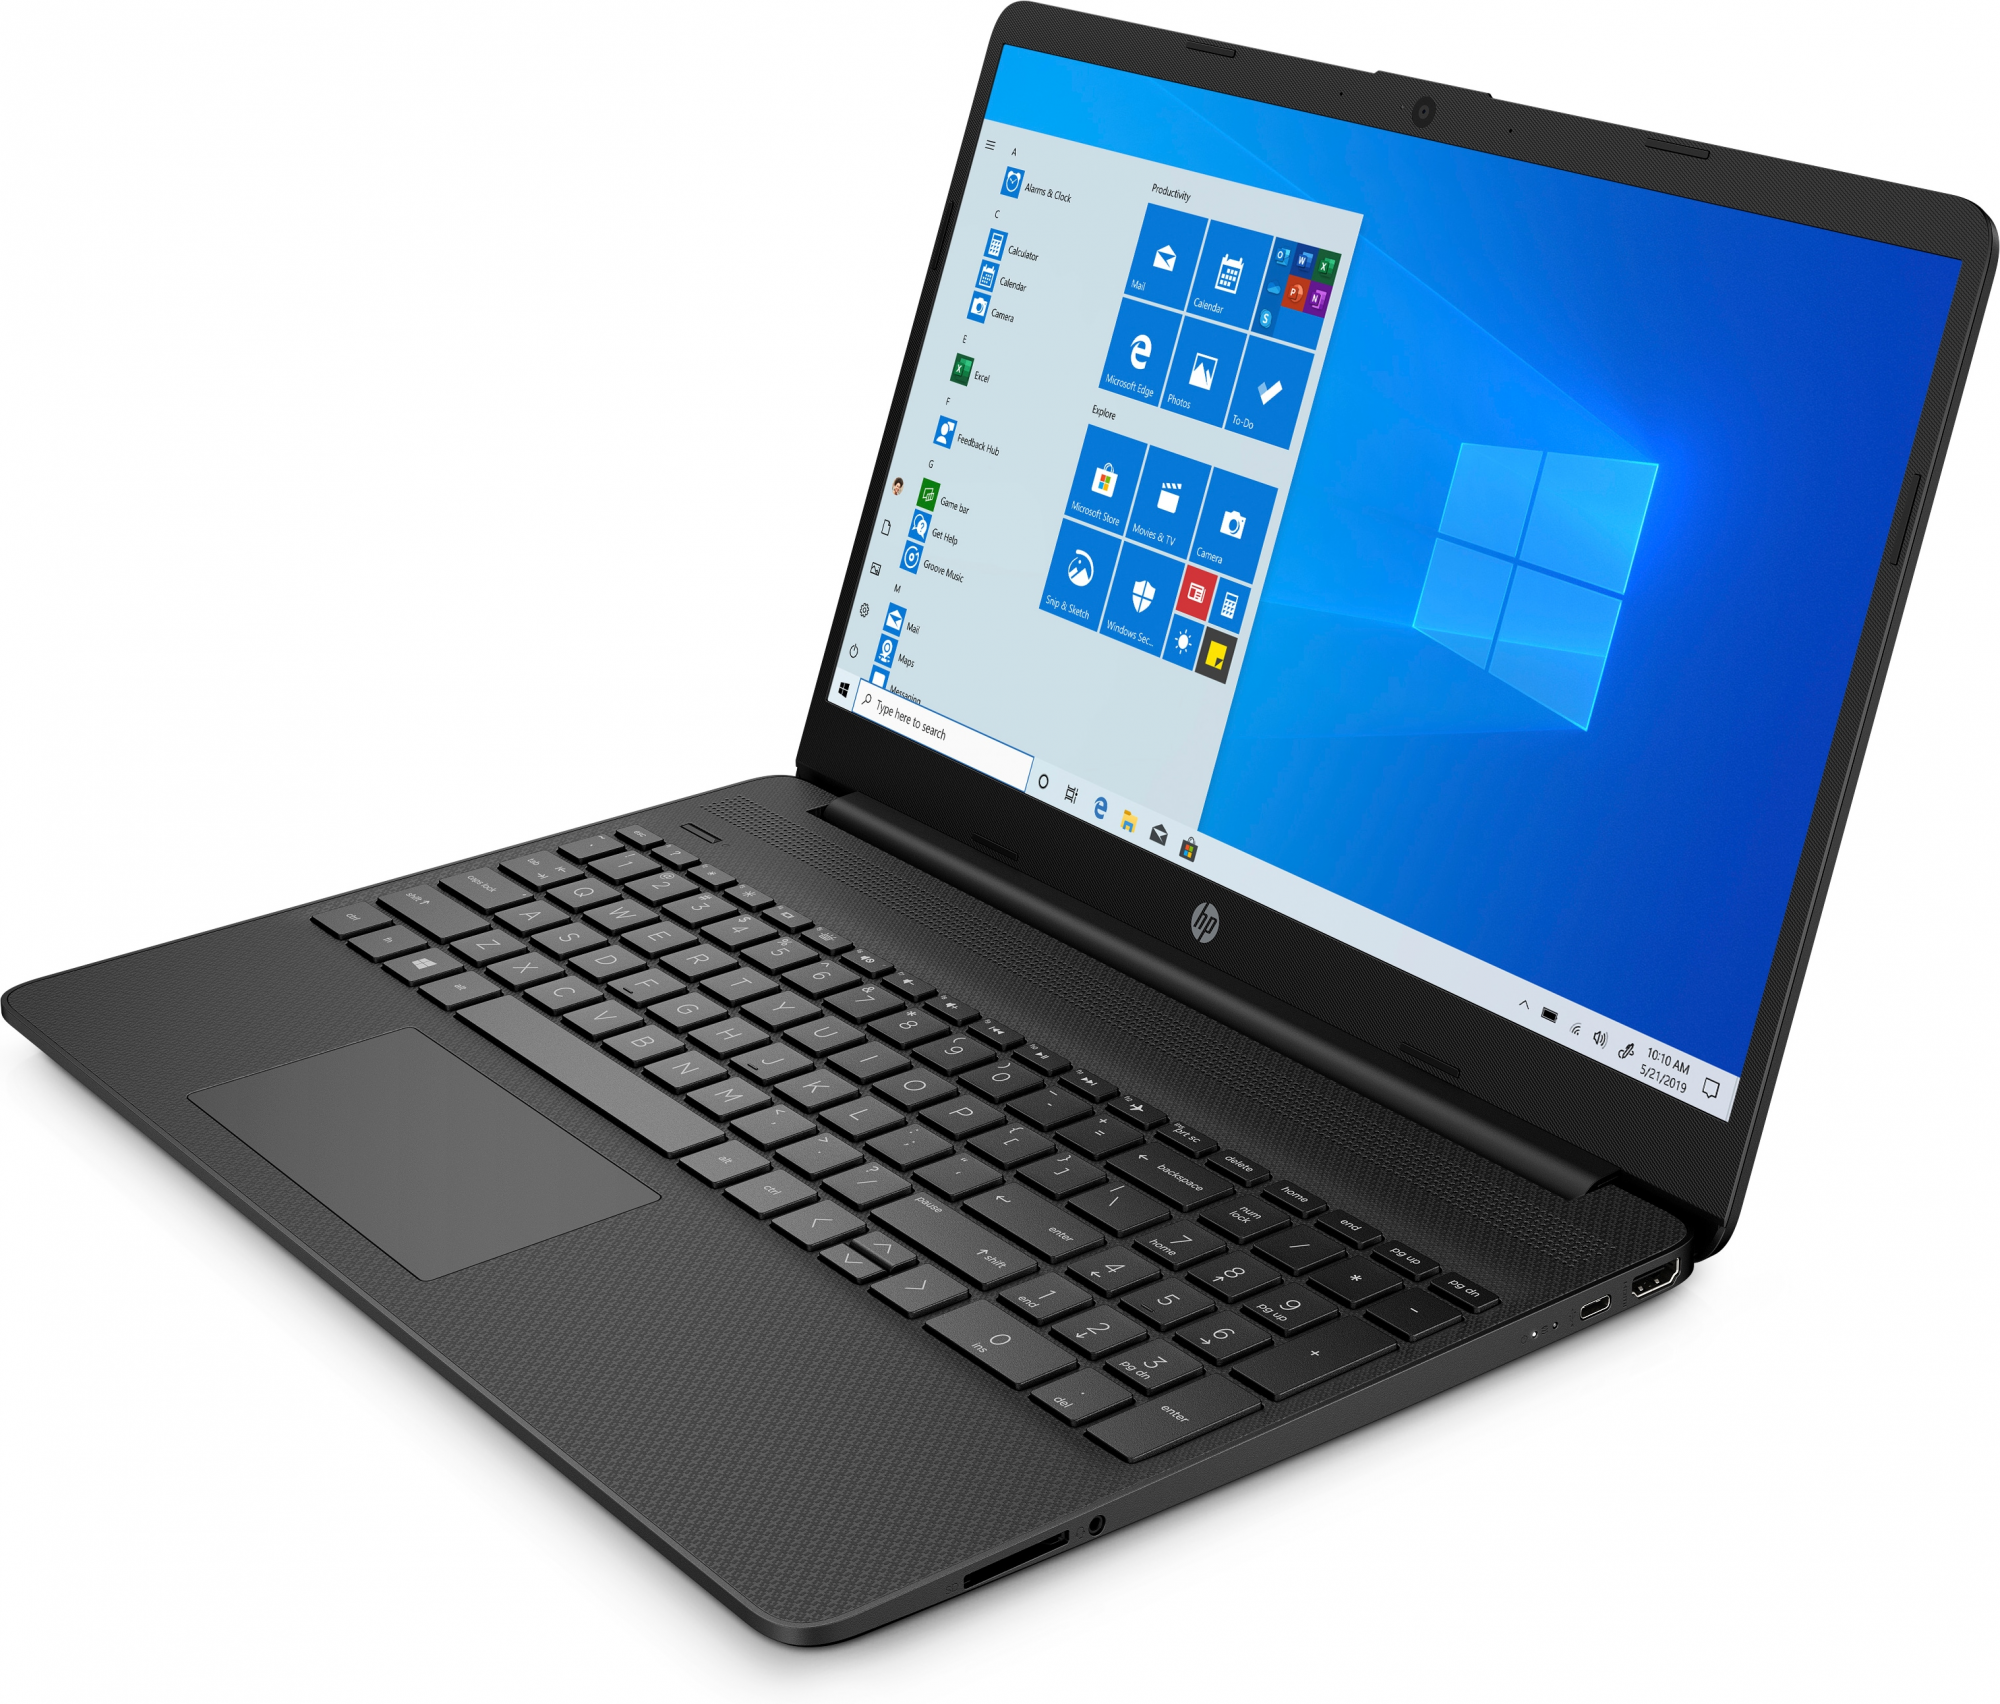 PC Notebook Nuovo HP CORE I5-1035G1 8GB 512GB W10H - Disponibile in 3-4 giorni lavorativi